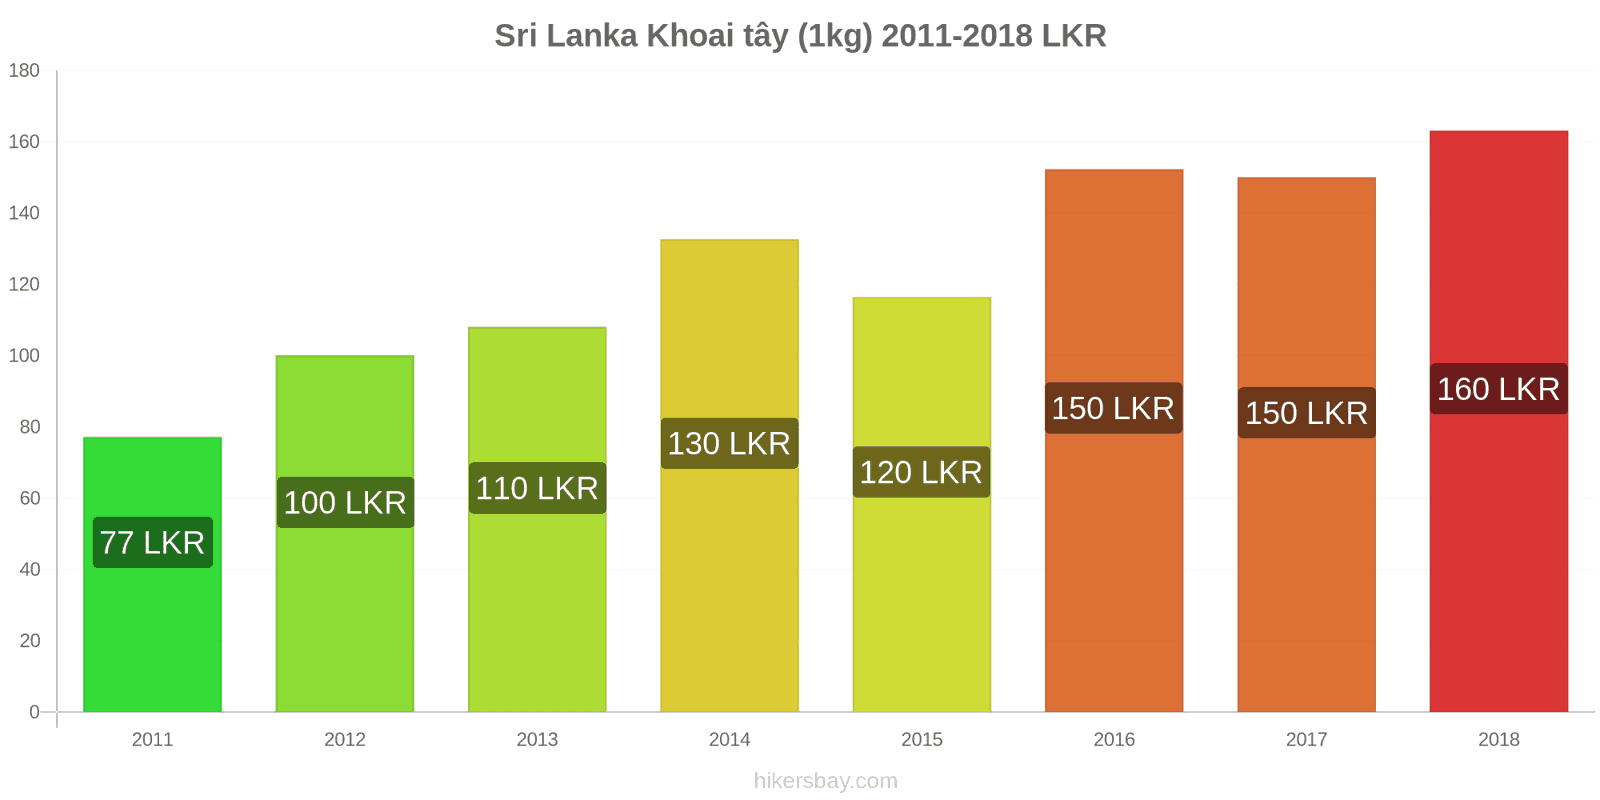 Sri Lanka thay đổi giá cả Khoai tây (1kg) hikersbay.com